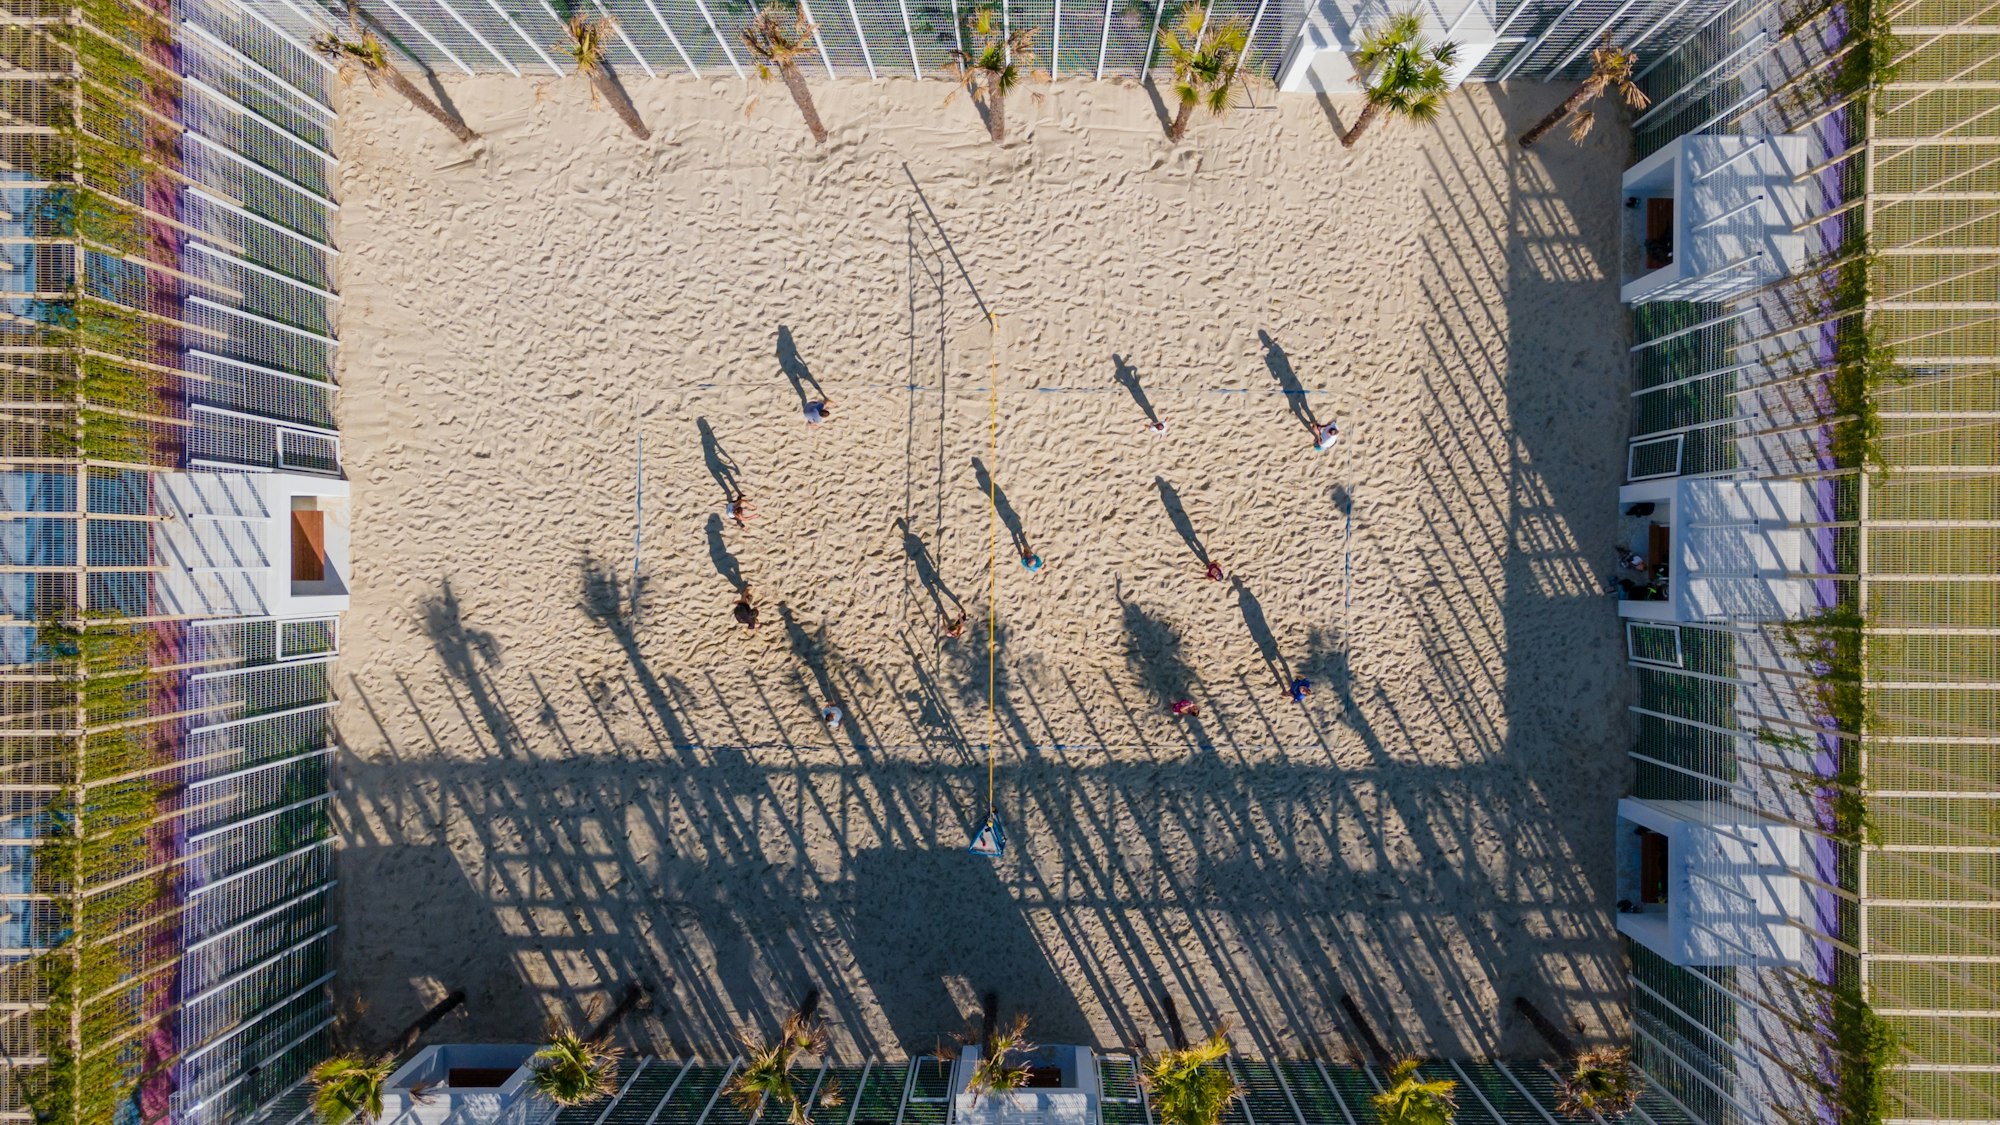 Vista superior de la cancha de voleibol de playa en un parque público. Competición de deportes de playa.